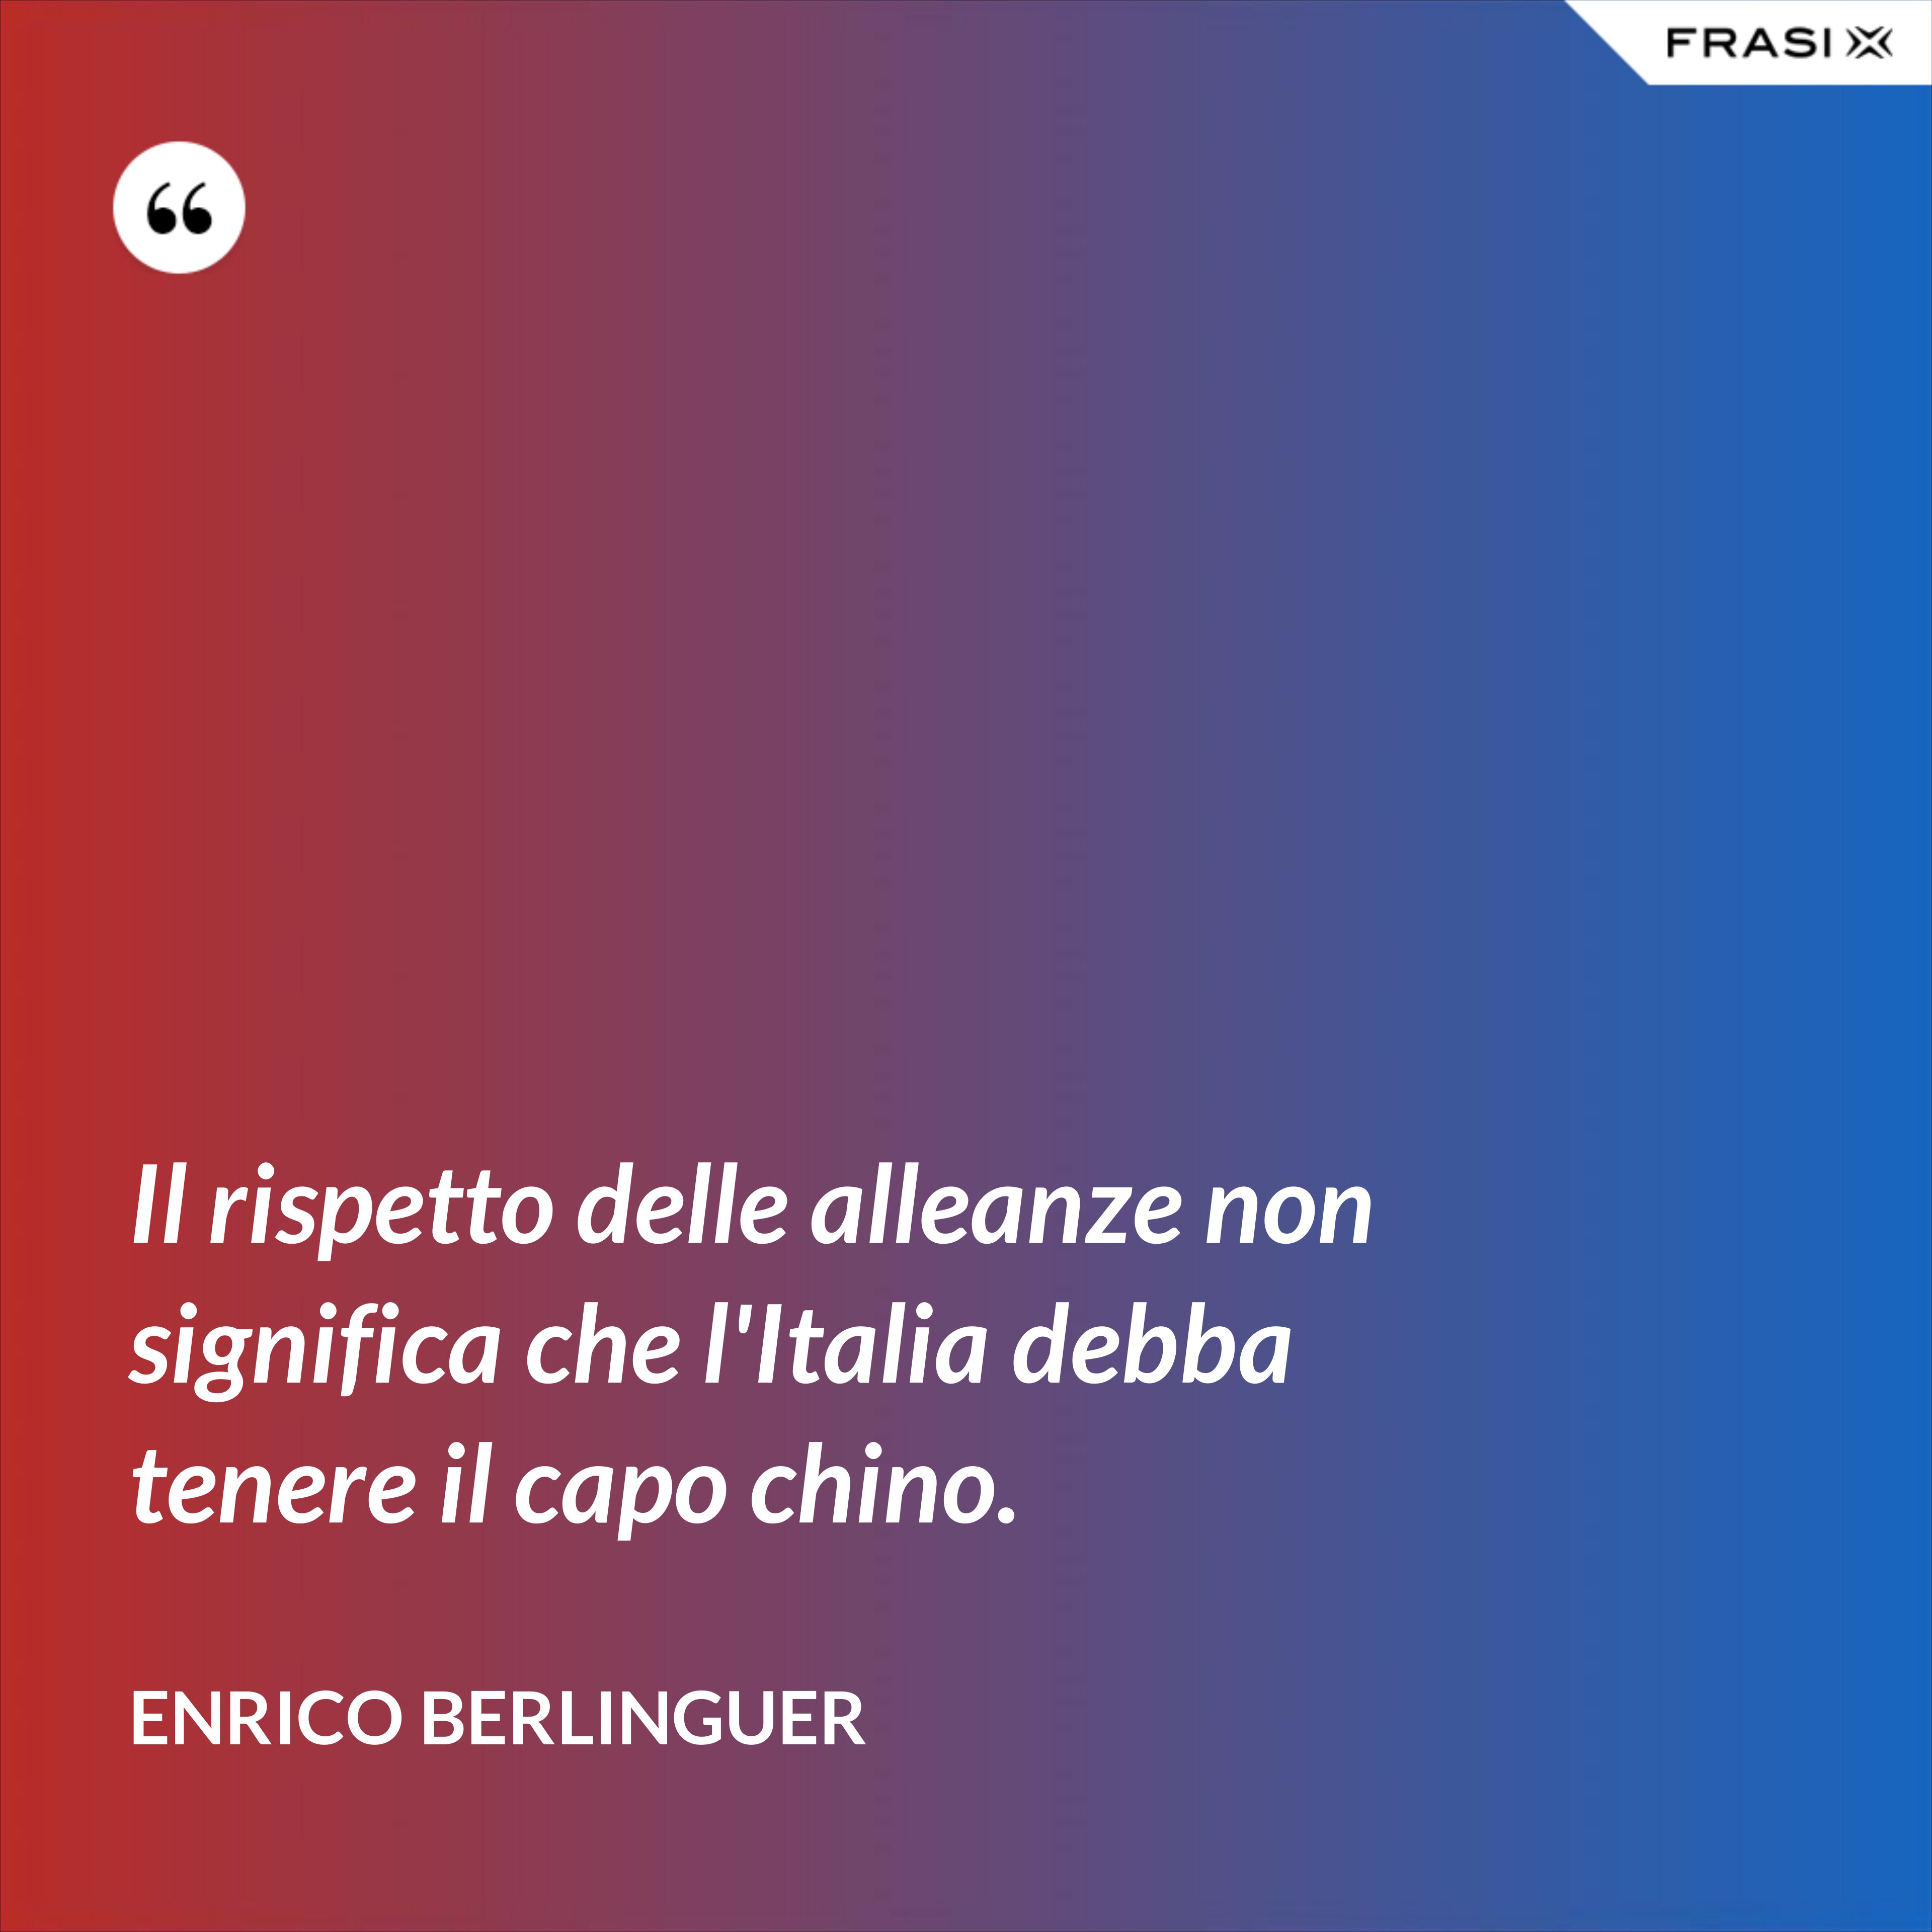 Il rispetto delle alleanze non significa che l'Italia debba tenere il capo chino. - Enrico Berlinguer